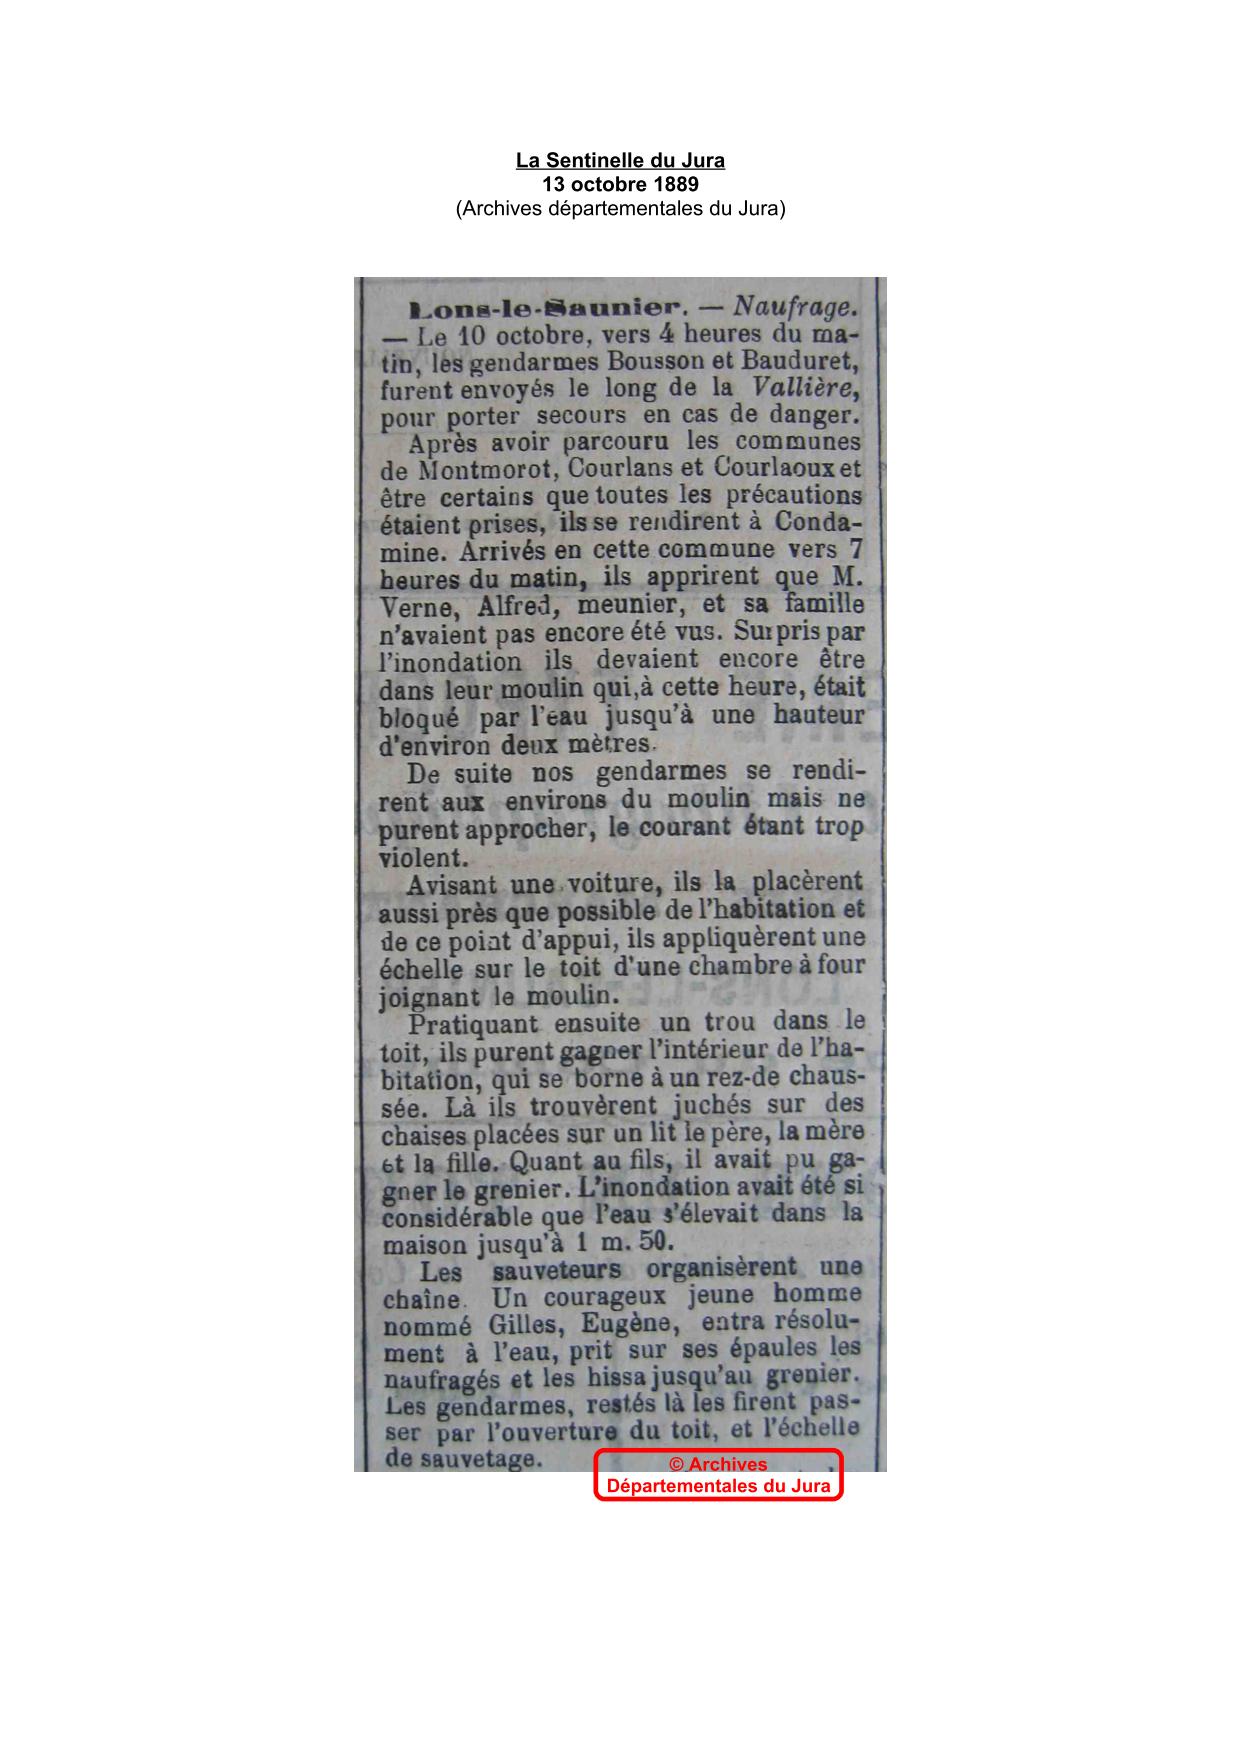 Journal - La Sentinelle du Jura - octobre 1889 - Partie 2